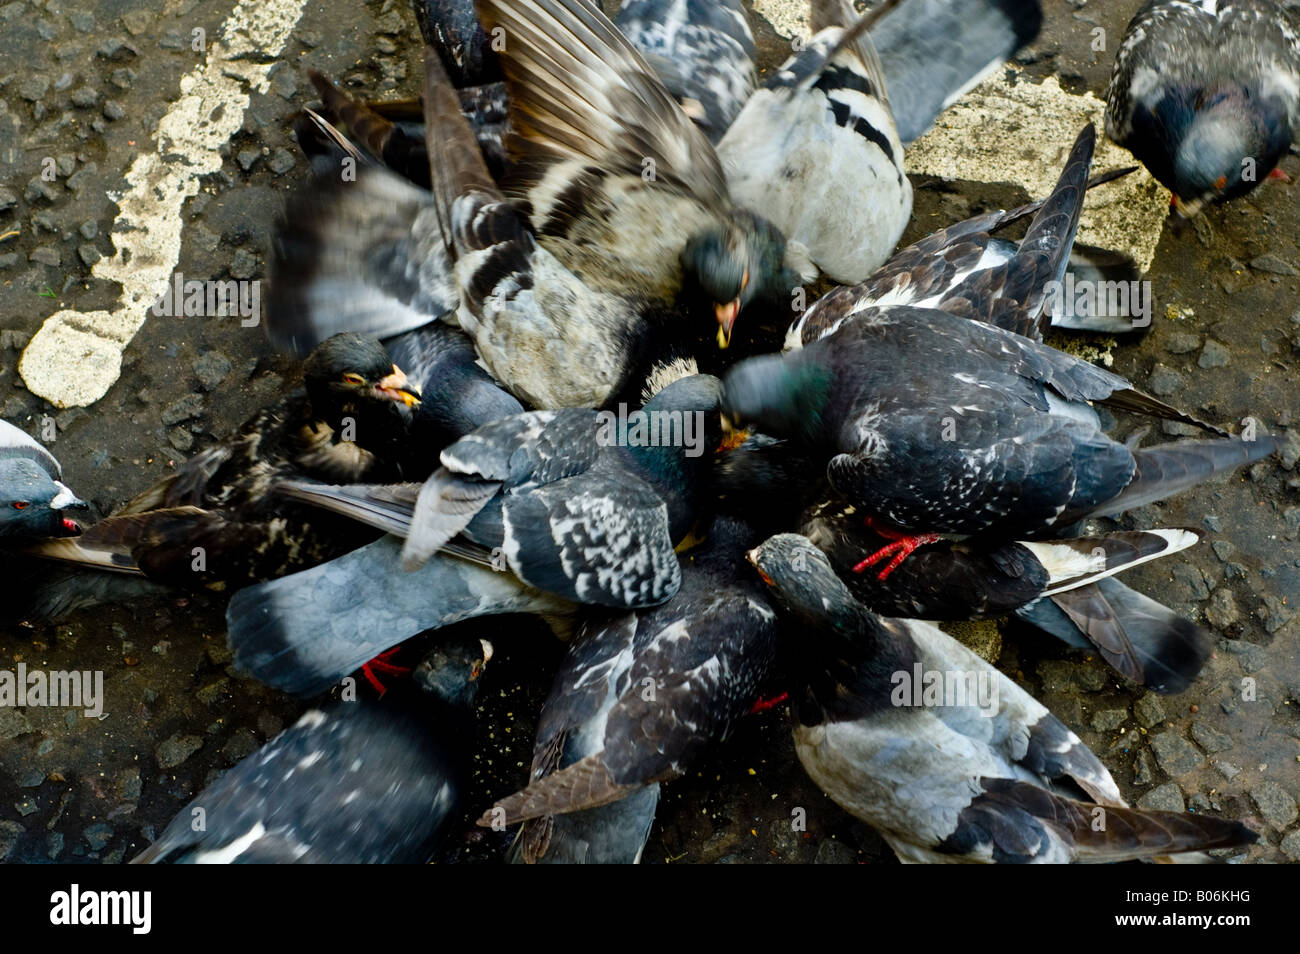 Tauben, Vögel, Federn, Chaos, Chaos, Flügel, Schnäbel, Krallen. Stockfoto